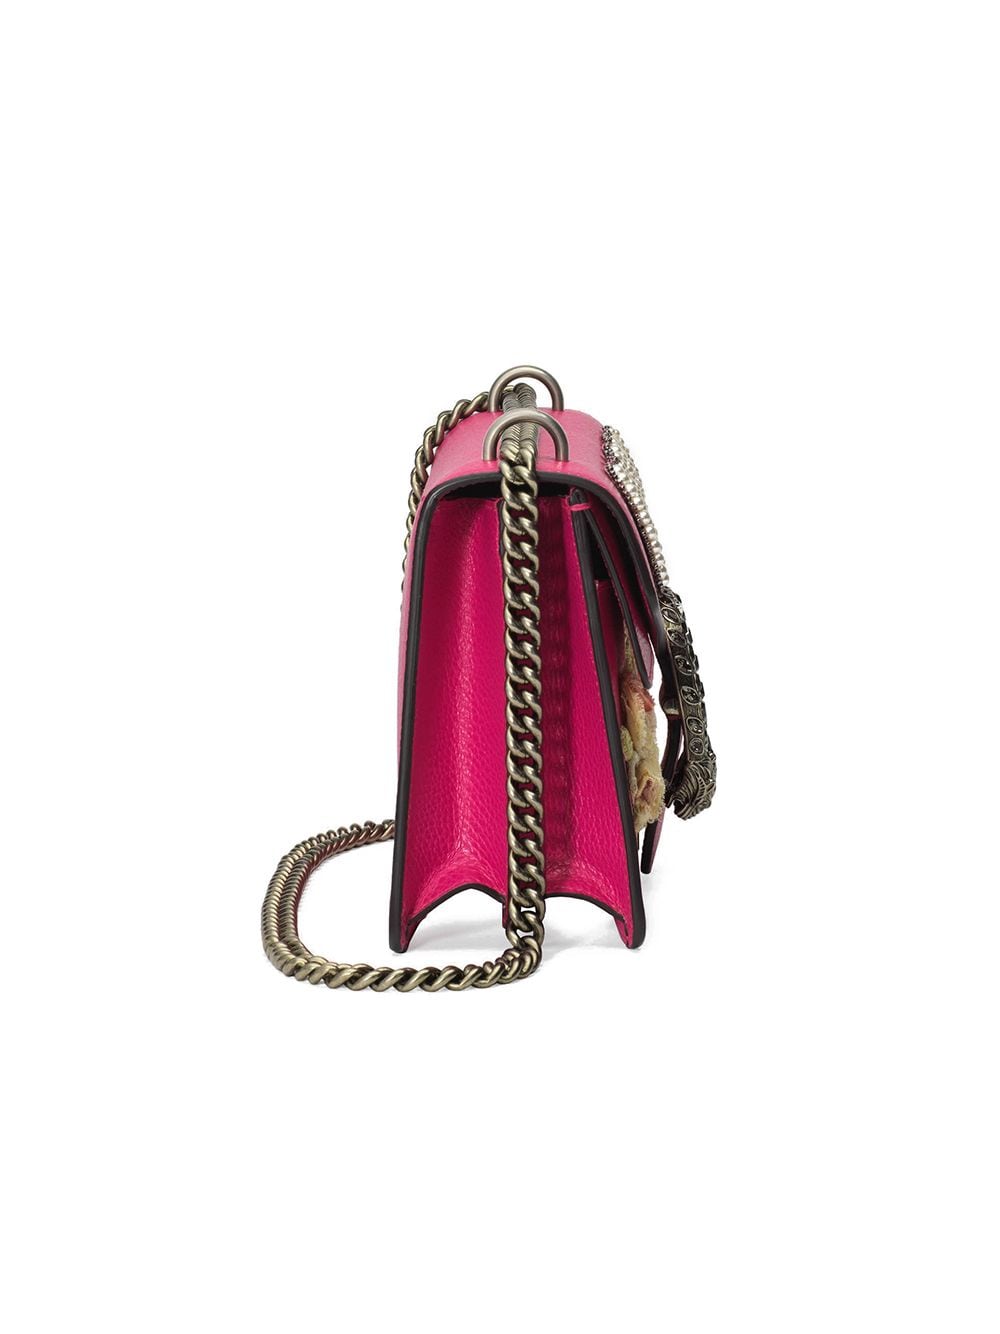 Gucci Pink Guccify Dionysus Small Shoulder Bag - Farfetch